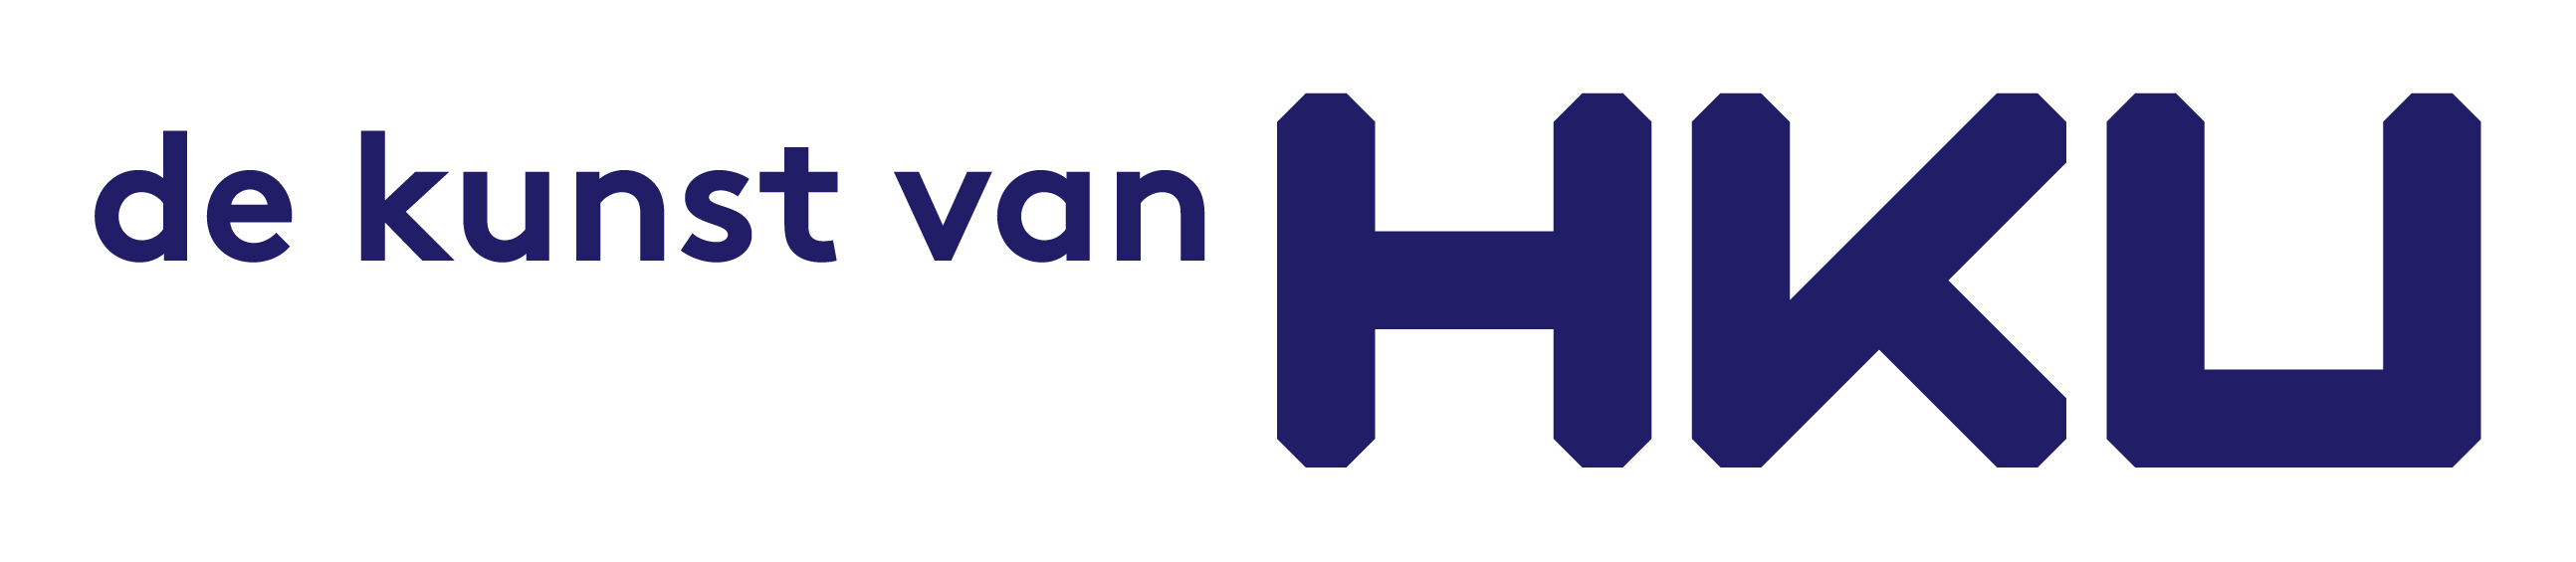 logo hku